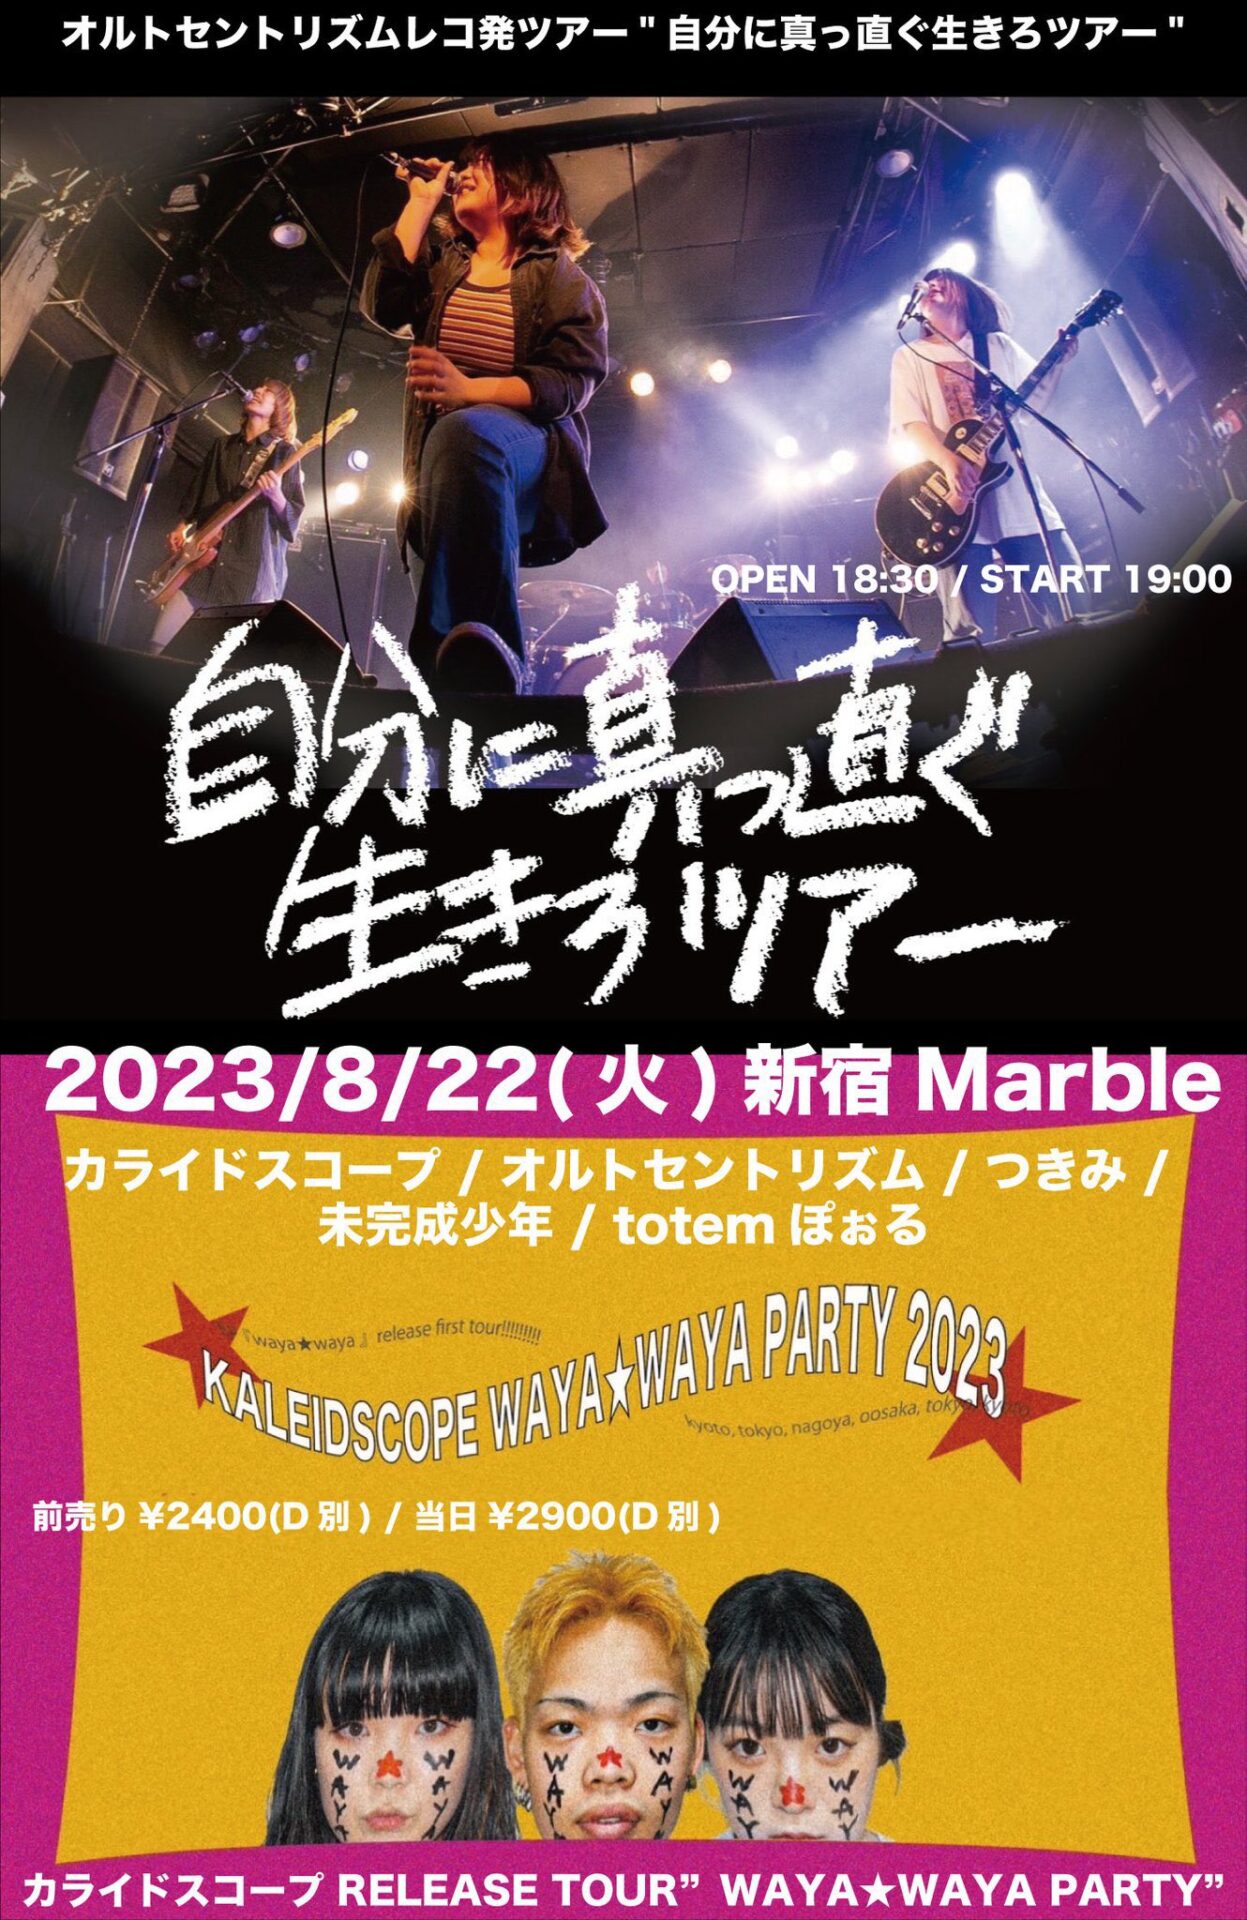 KALEID SCOPE RELEASE TOUR"WAYA★WAYA PARTY" × オルトセントリズムレコ発ツアー「自分に真っ直ぐ生きろツアー」